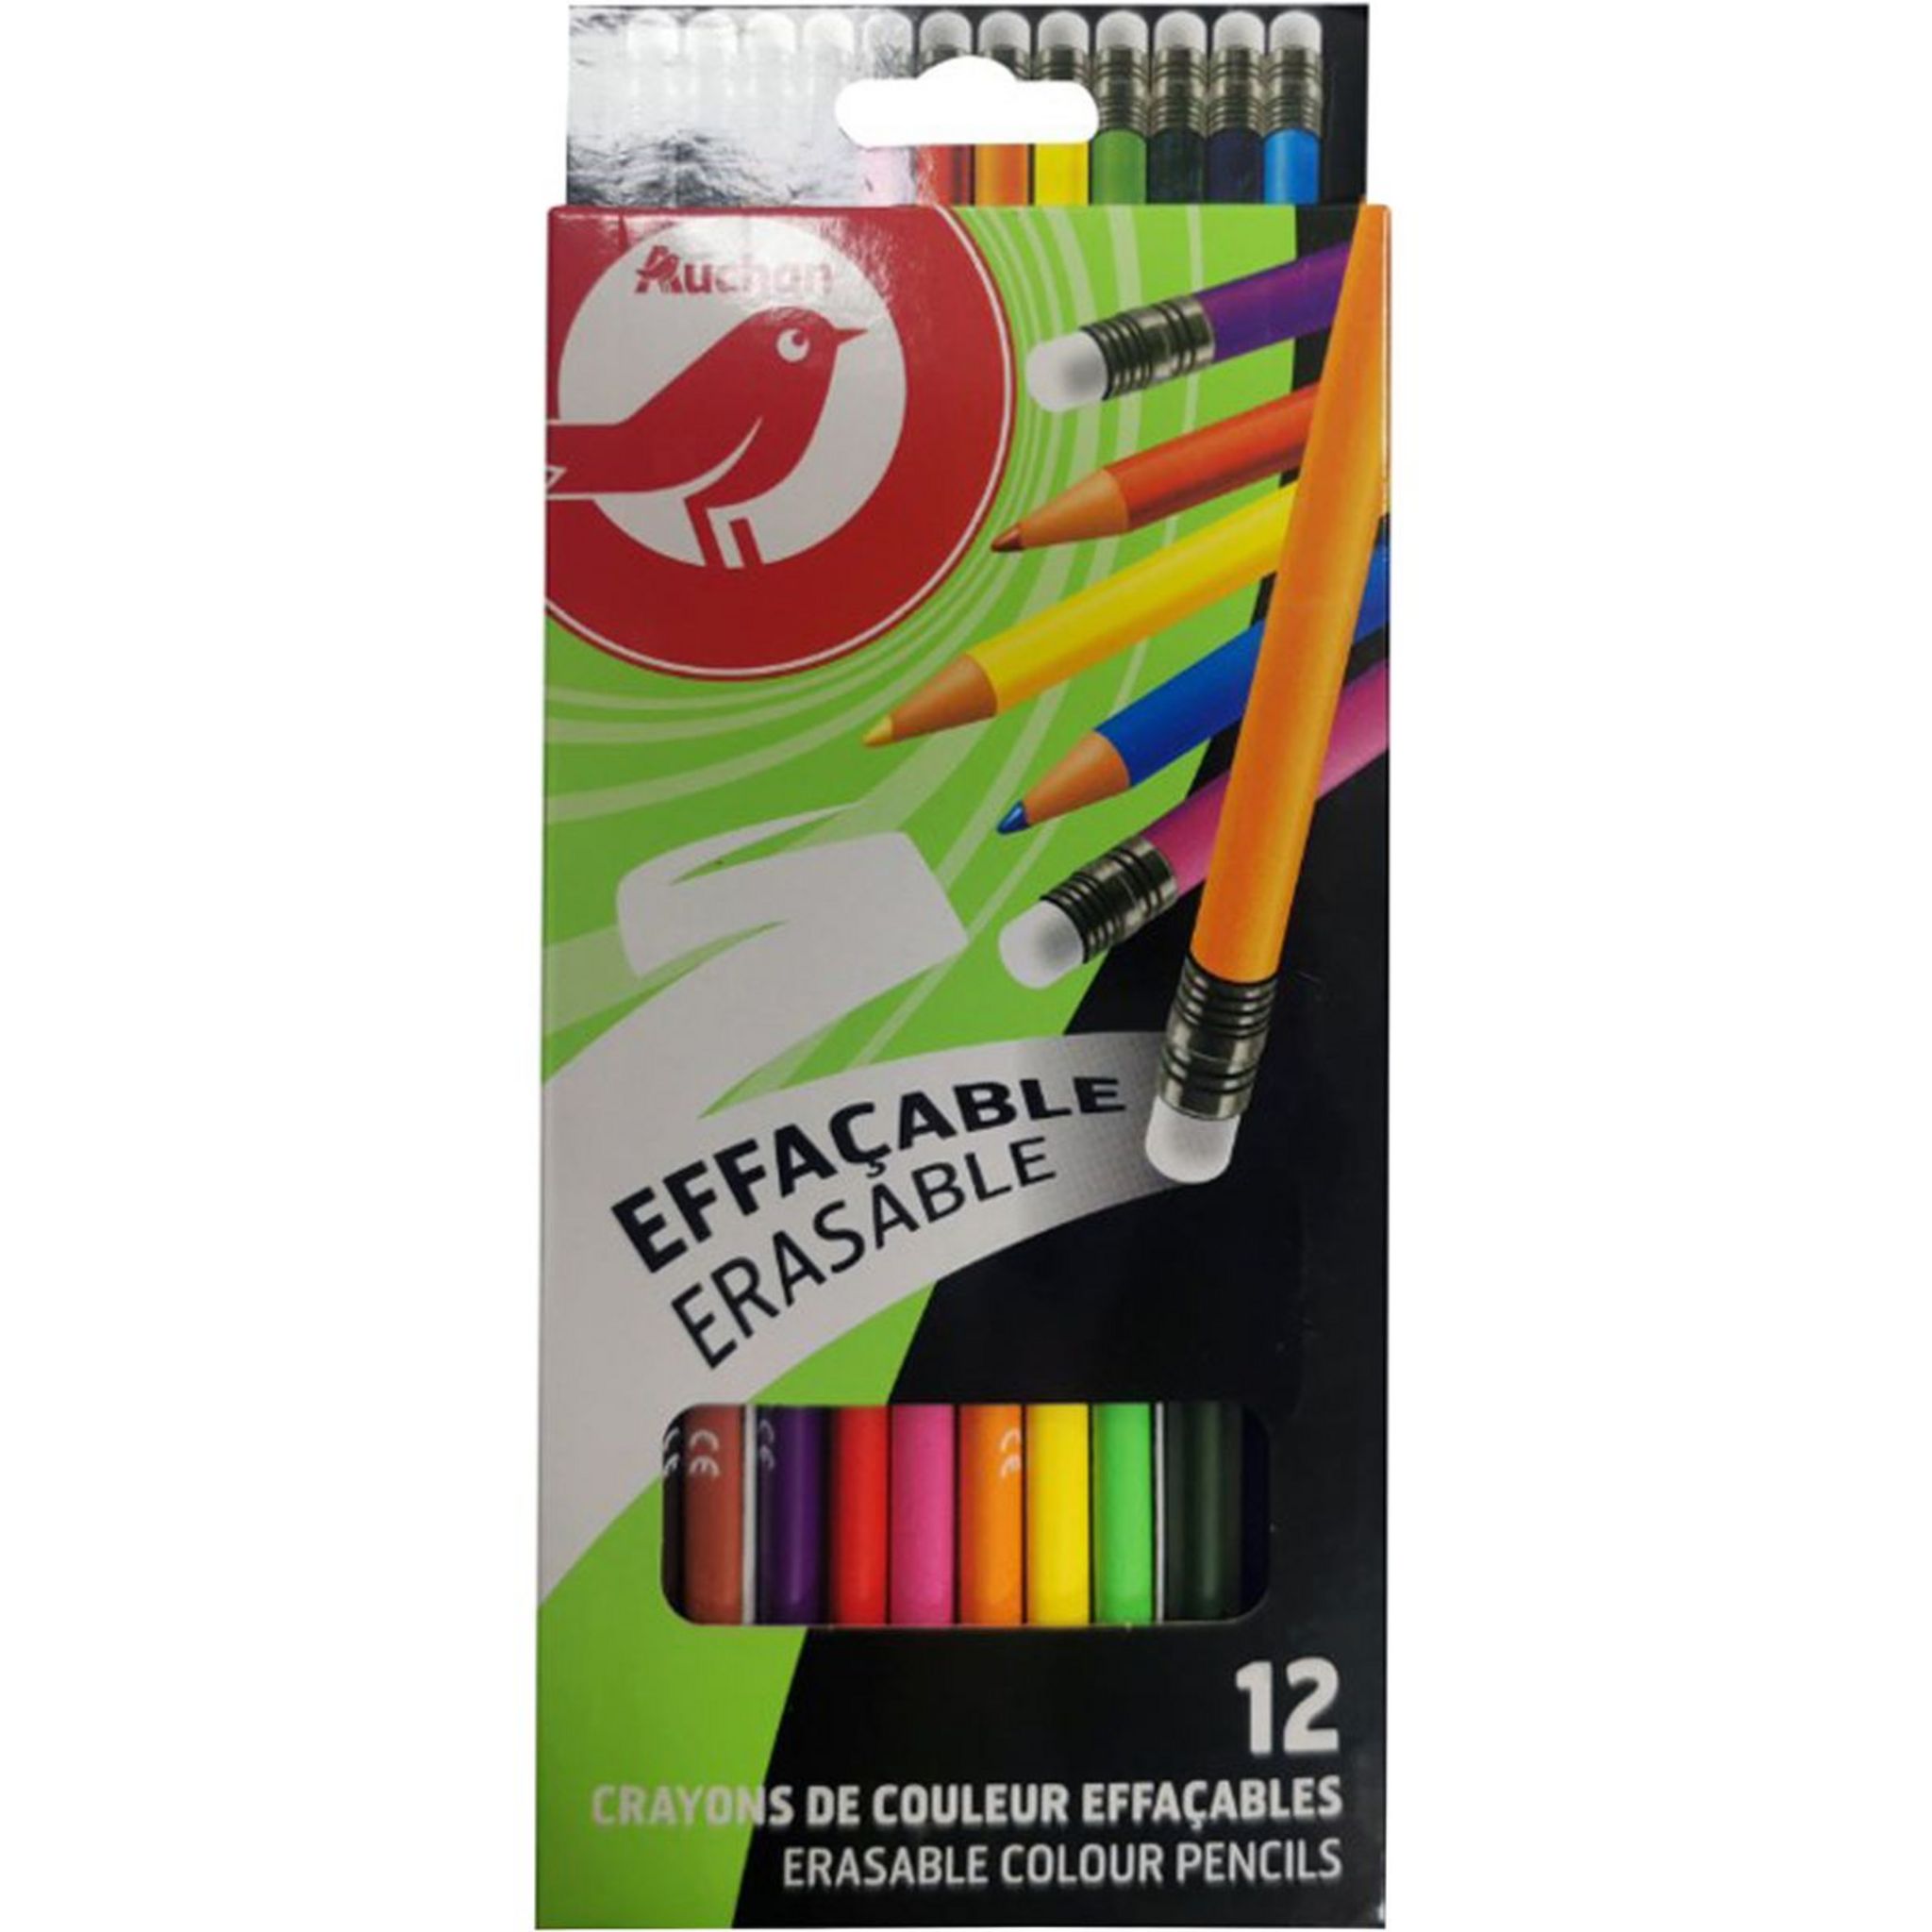 AUCHAN Etui de 36 crayons de couleur pas cher 